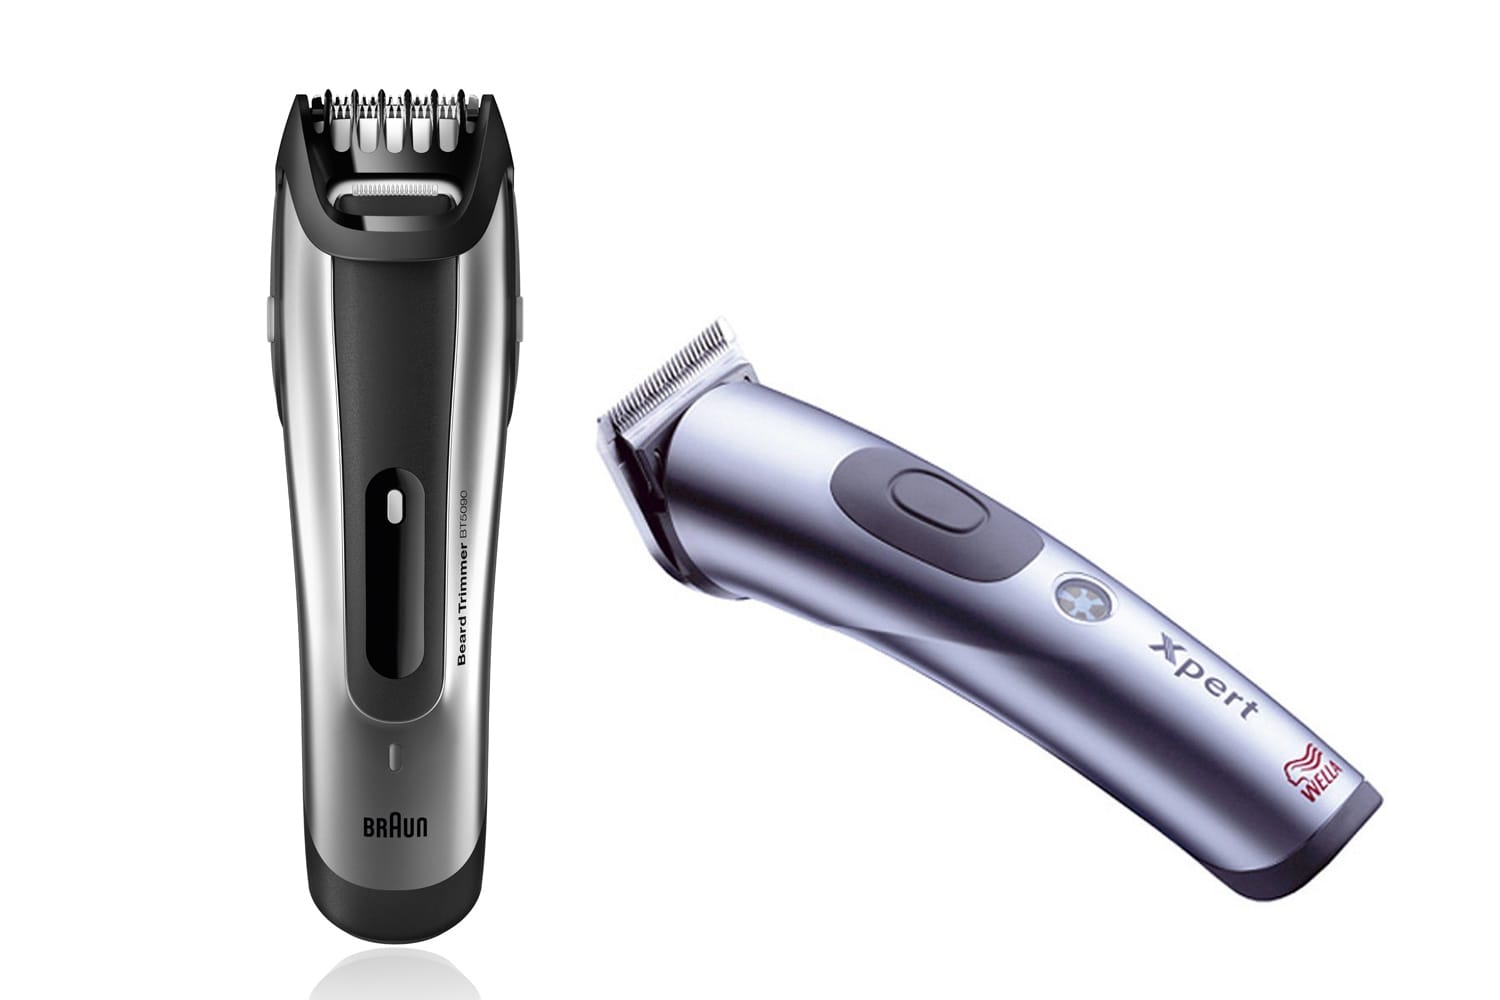 Zum gleichmäßigen Trimmen des Bartes benötigt man einen millimetergenauen elektrischen Bart-Trimmer wie dem Braun BT5090 (um 85 Euro) oder dem Wella Xpert HS71 (um 210 Euro).